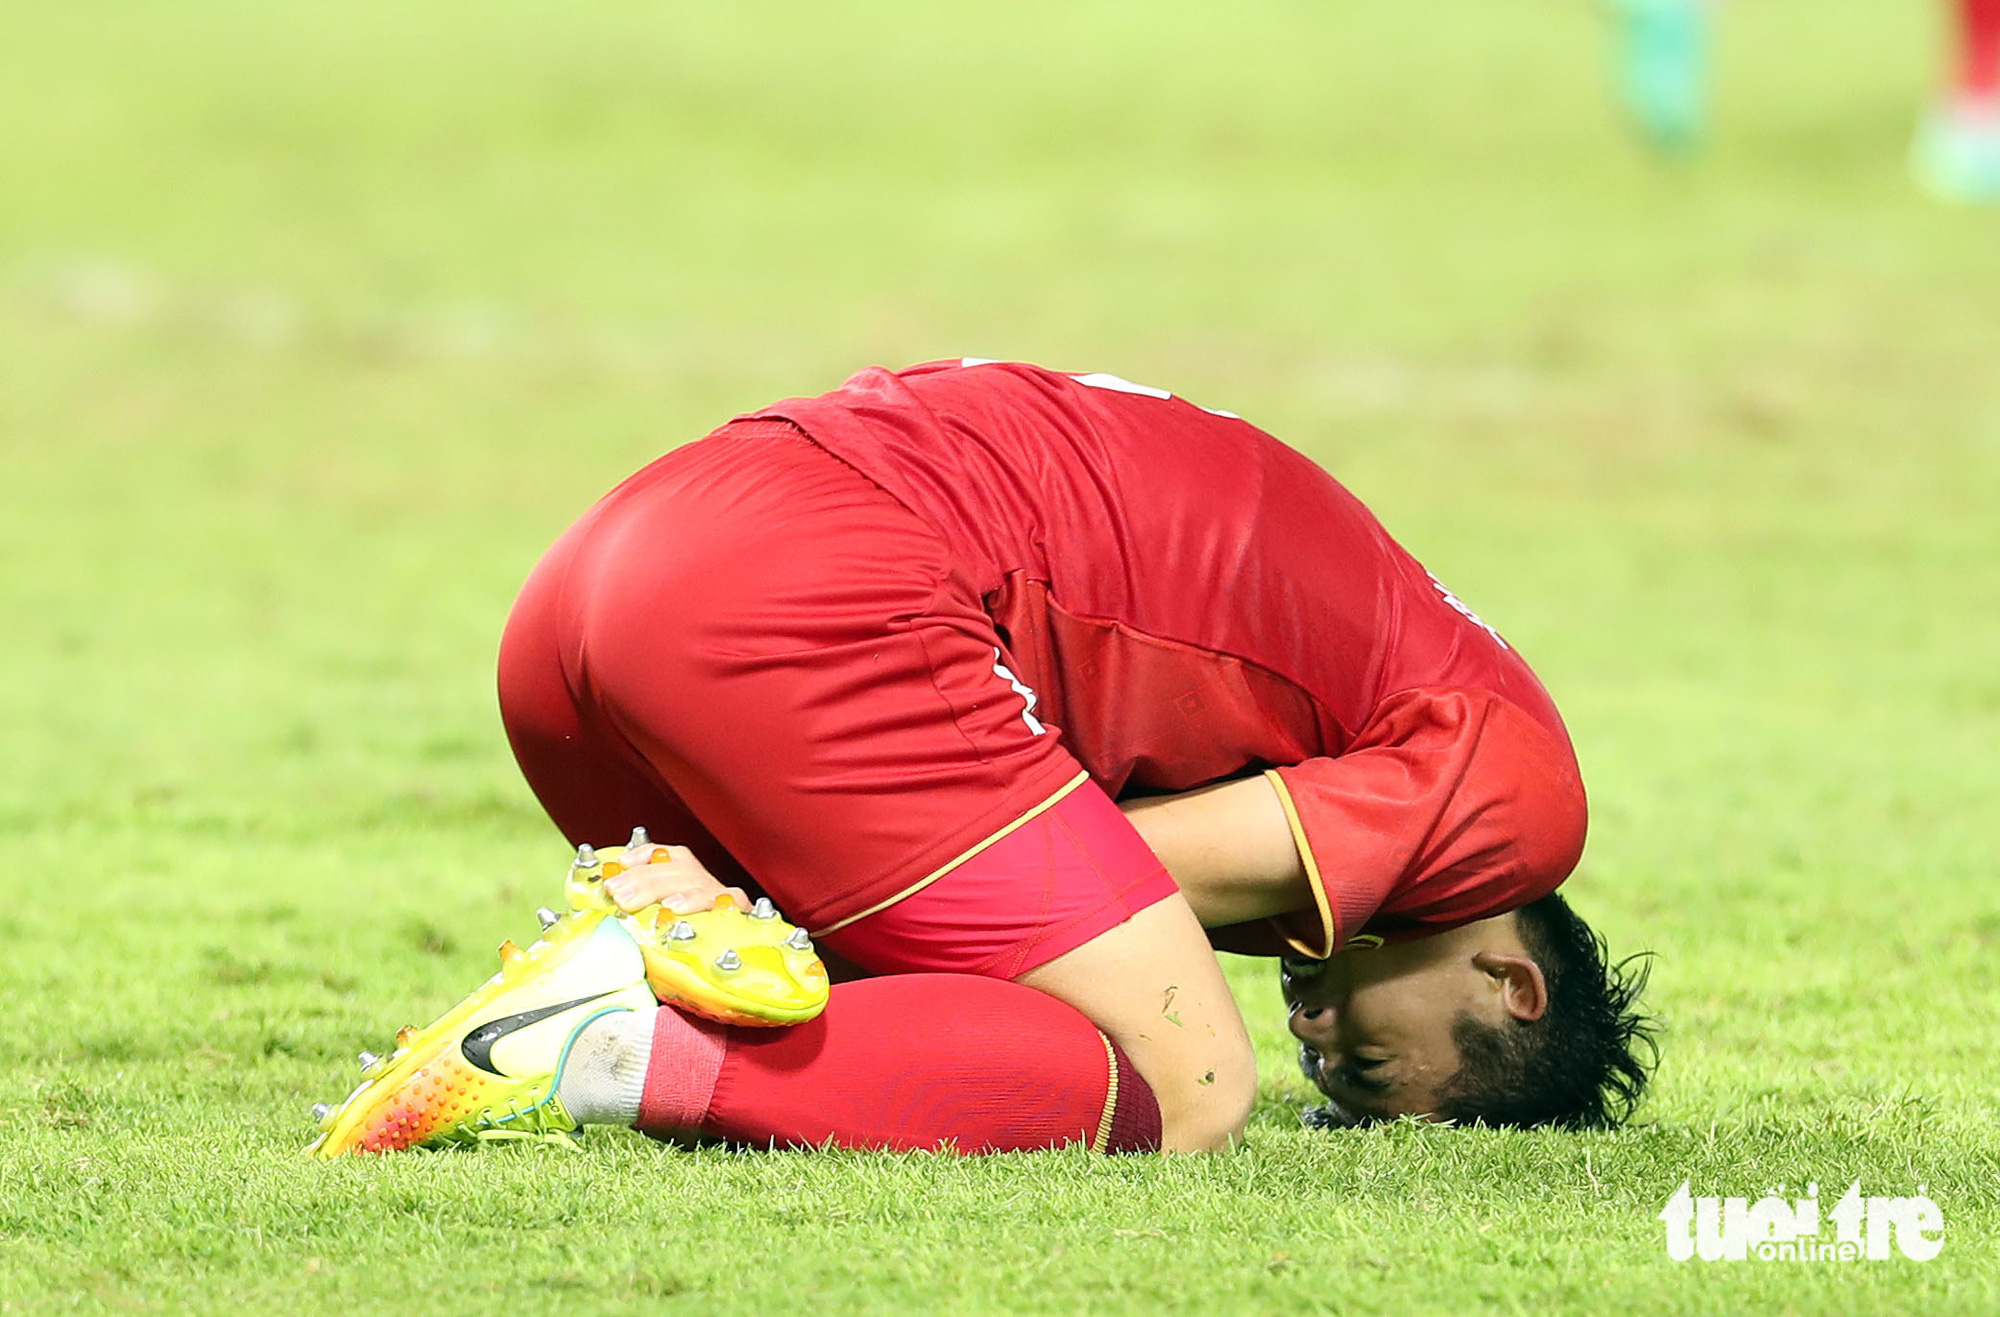 Văn Khang ôm chân đau đớn sau một pha bị cầu thủ U22 Thái Lan phạm lỗi - Ảnh: N.K 